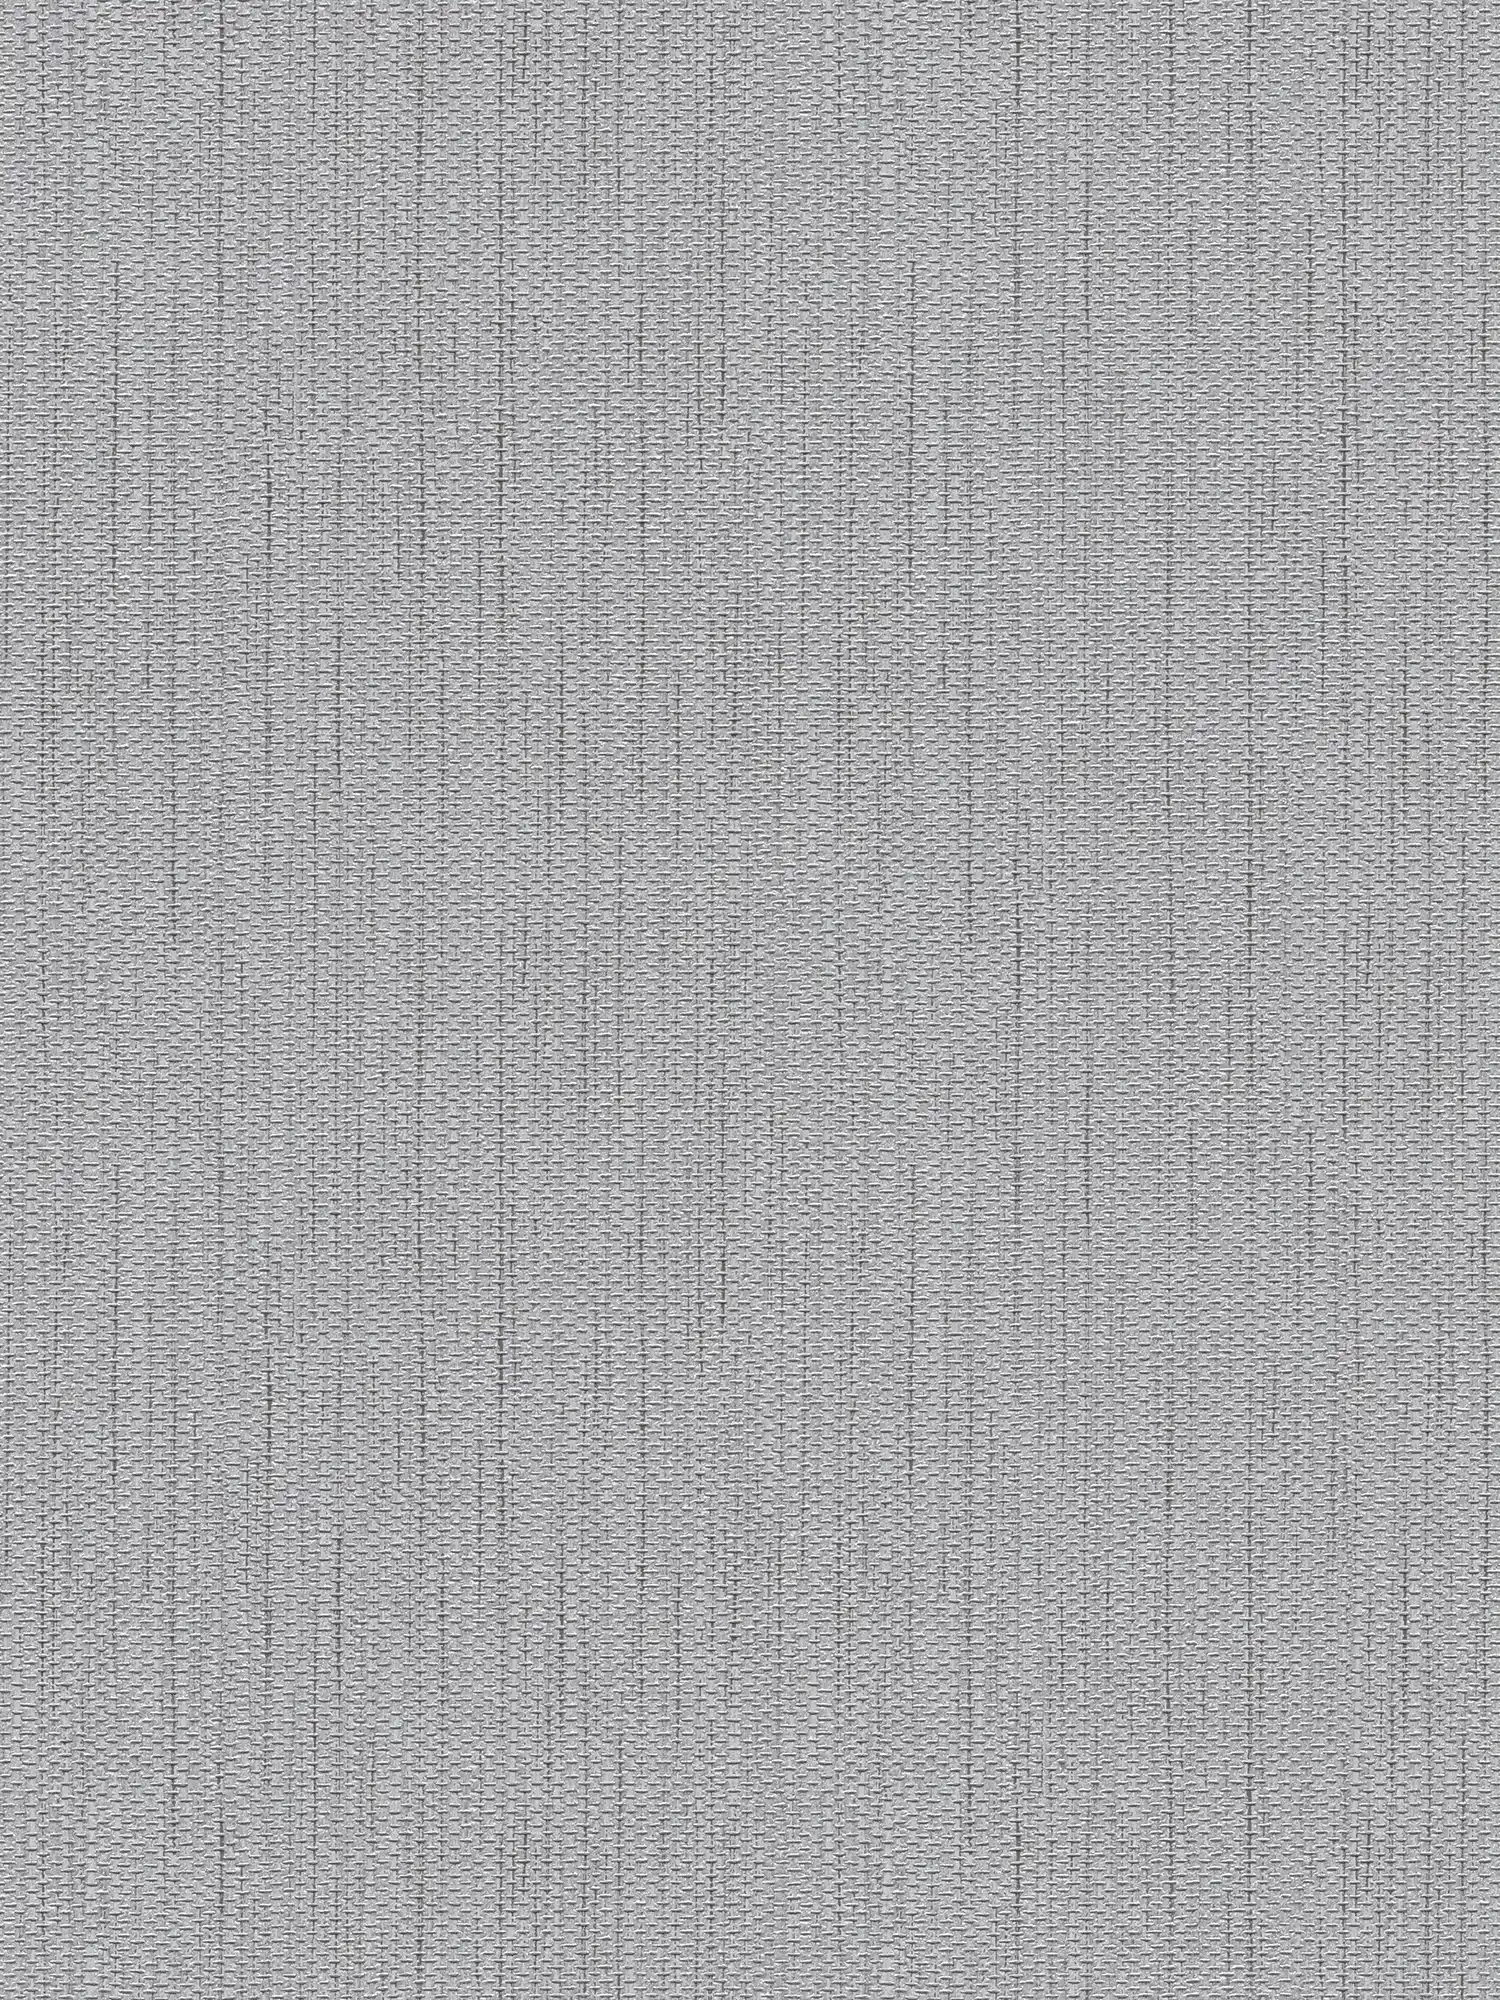 Papel pintado no tejido de aspecto textil con estructura de lino - gris
